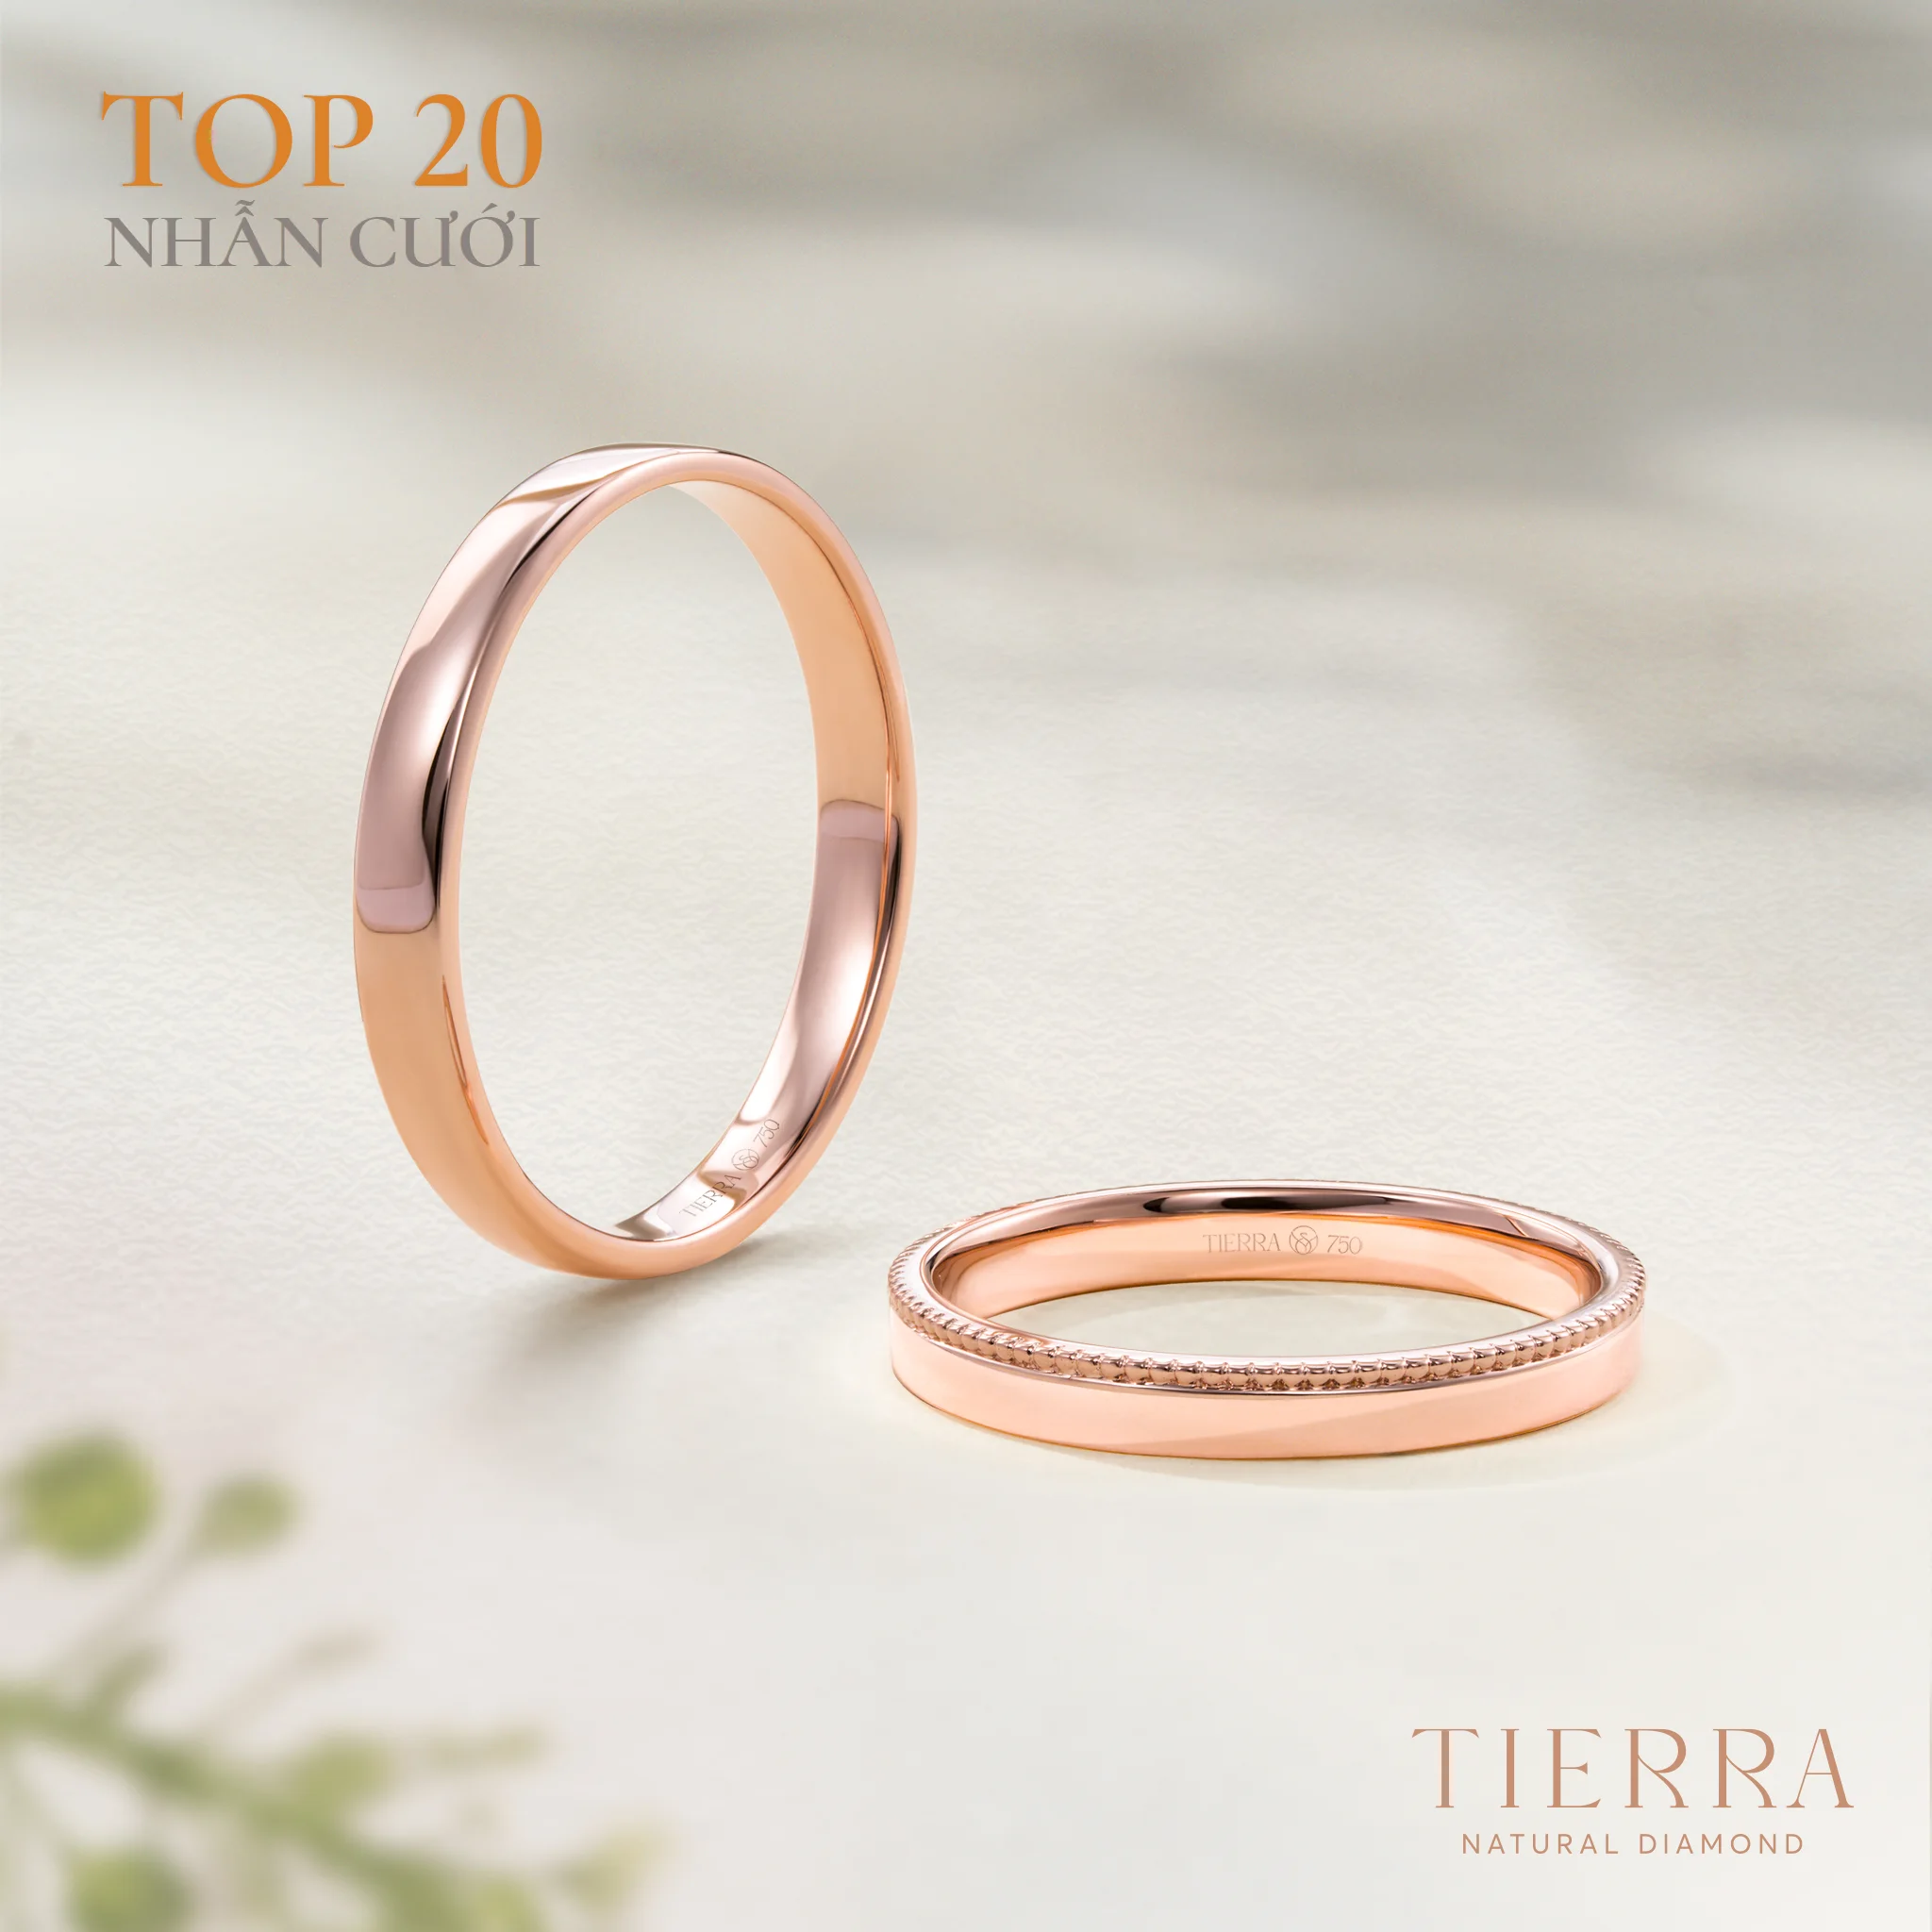 Nhẫn cưới NCC2015 thuộc “top 3” mẫu nhẫn cưới vàng hồng được ưa chuộng tại Tierra